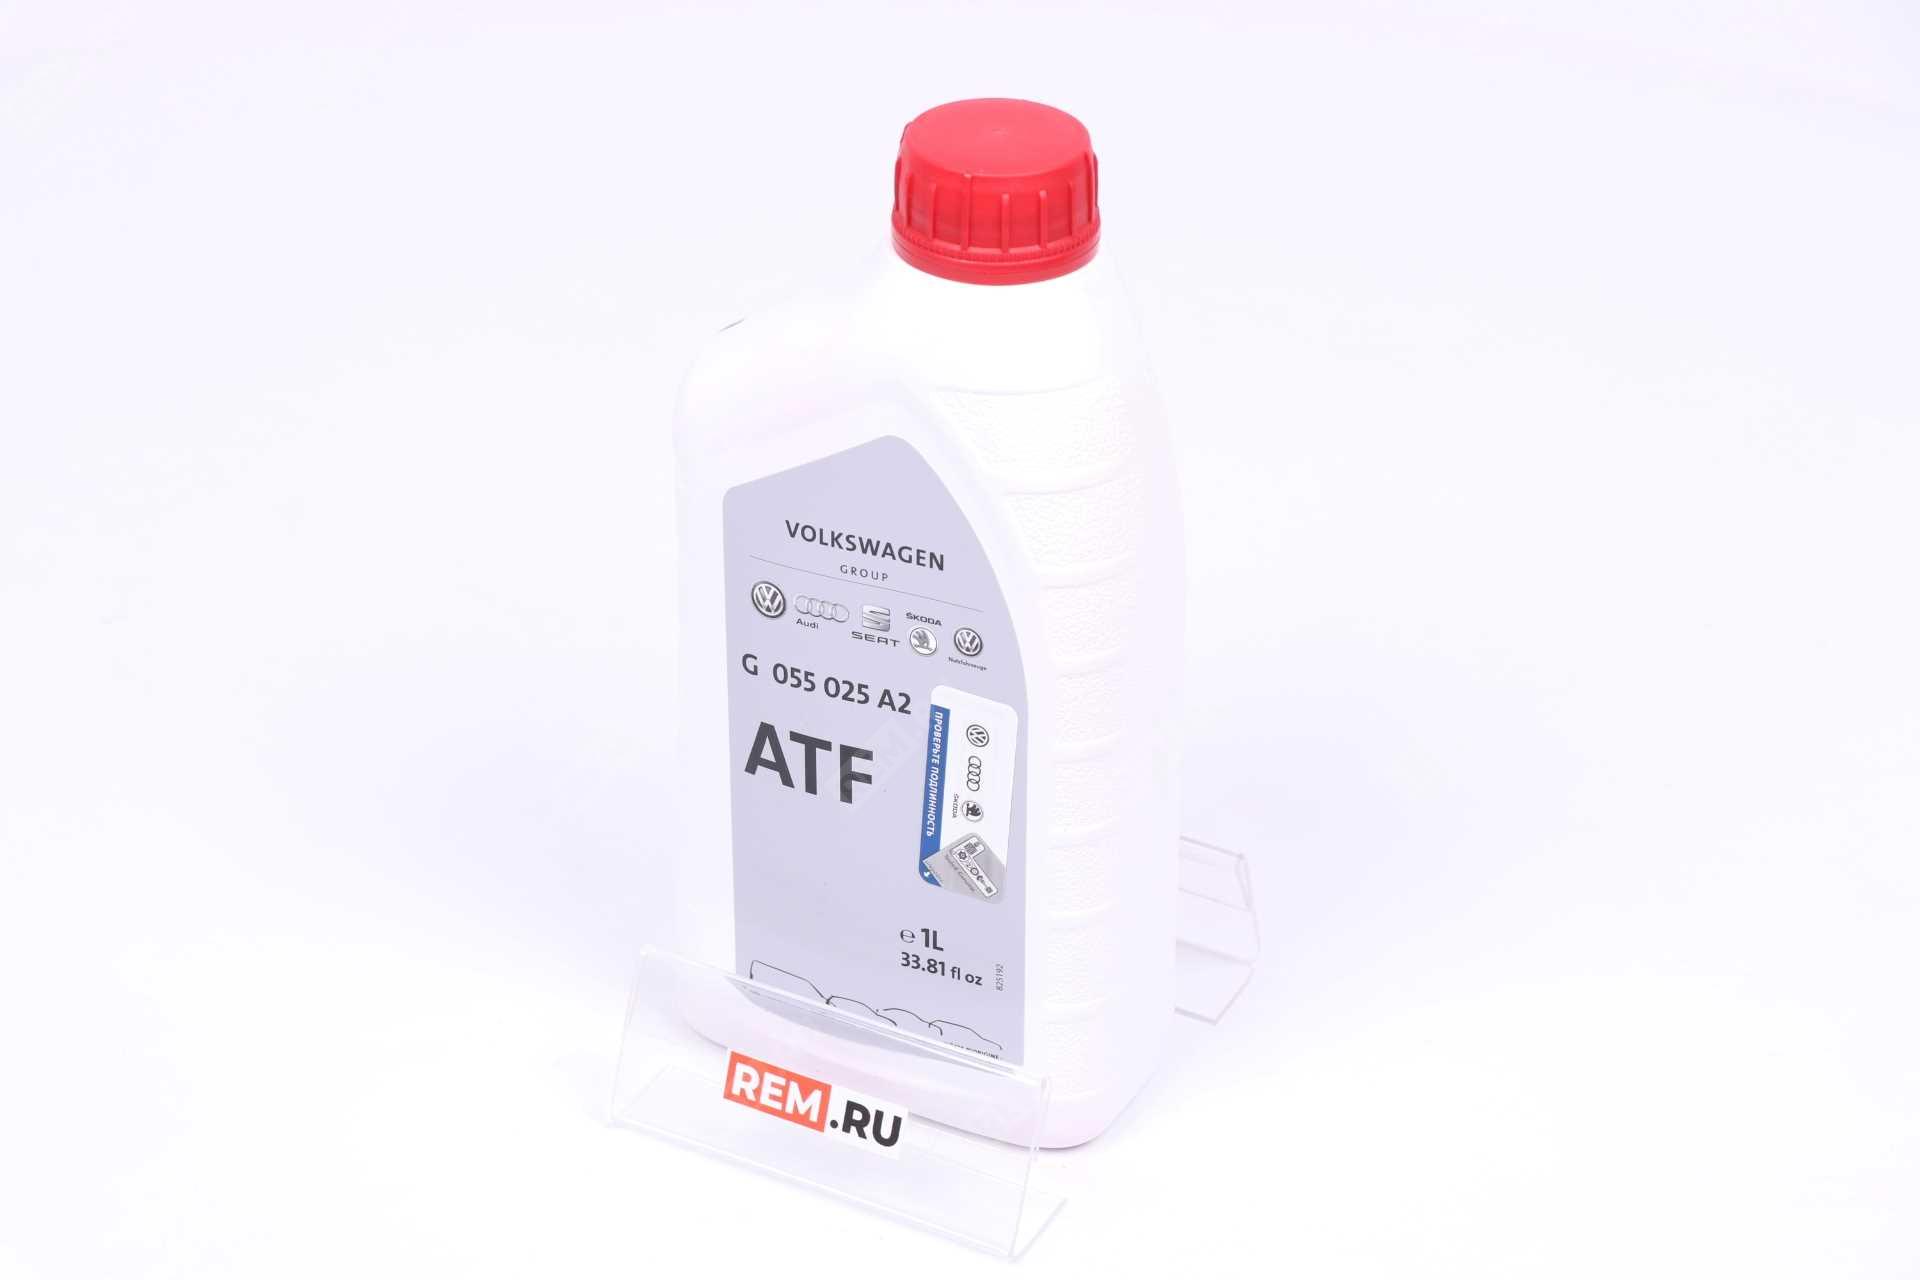  G055025A2 масло трансмиссионное vag atf, 1л